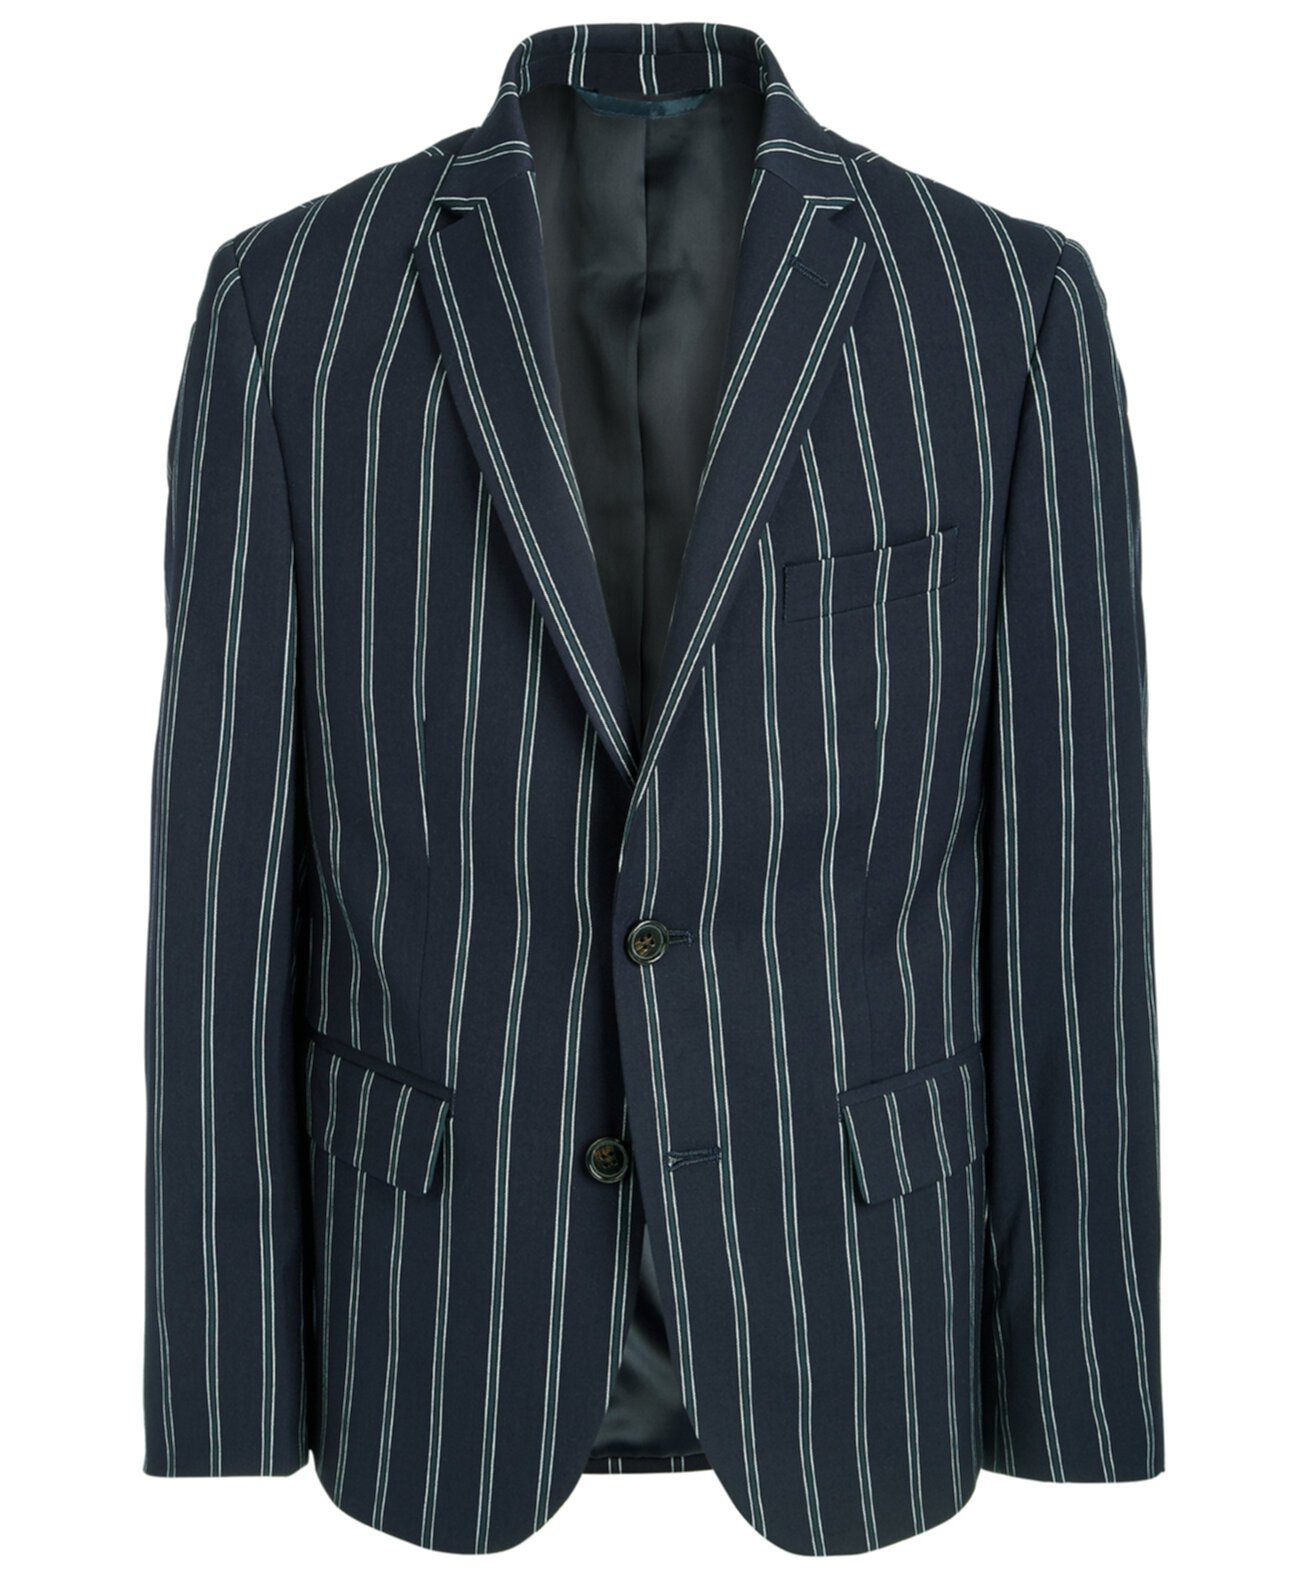 Спортивное пальто темно-синего цвета в полоску Big Boys Classic Fit Ralph Lauren